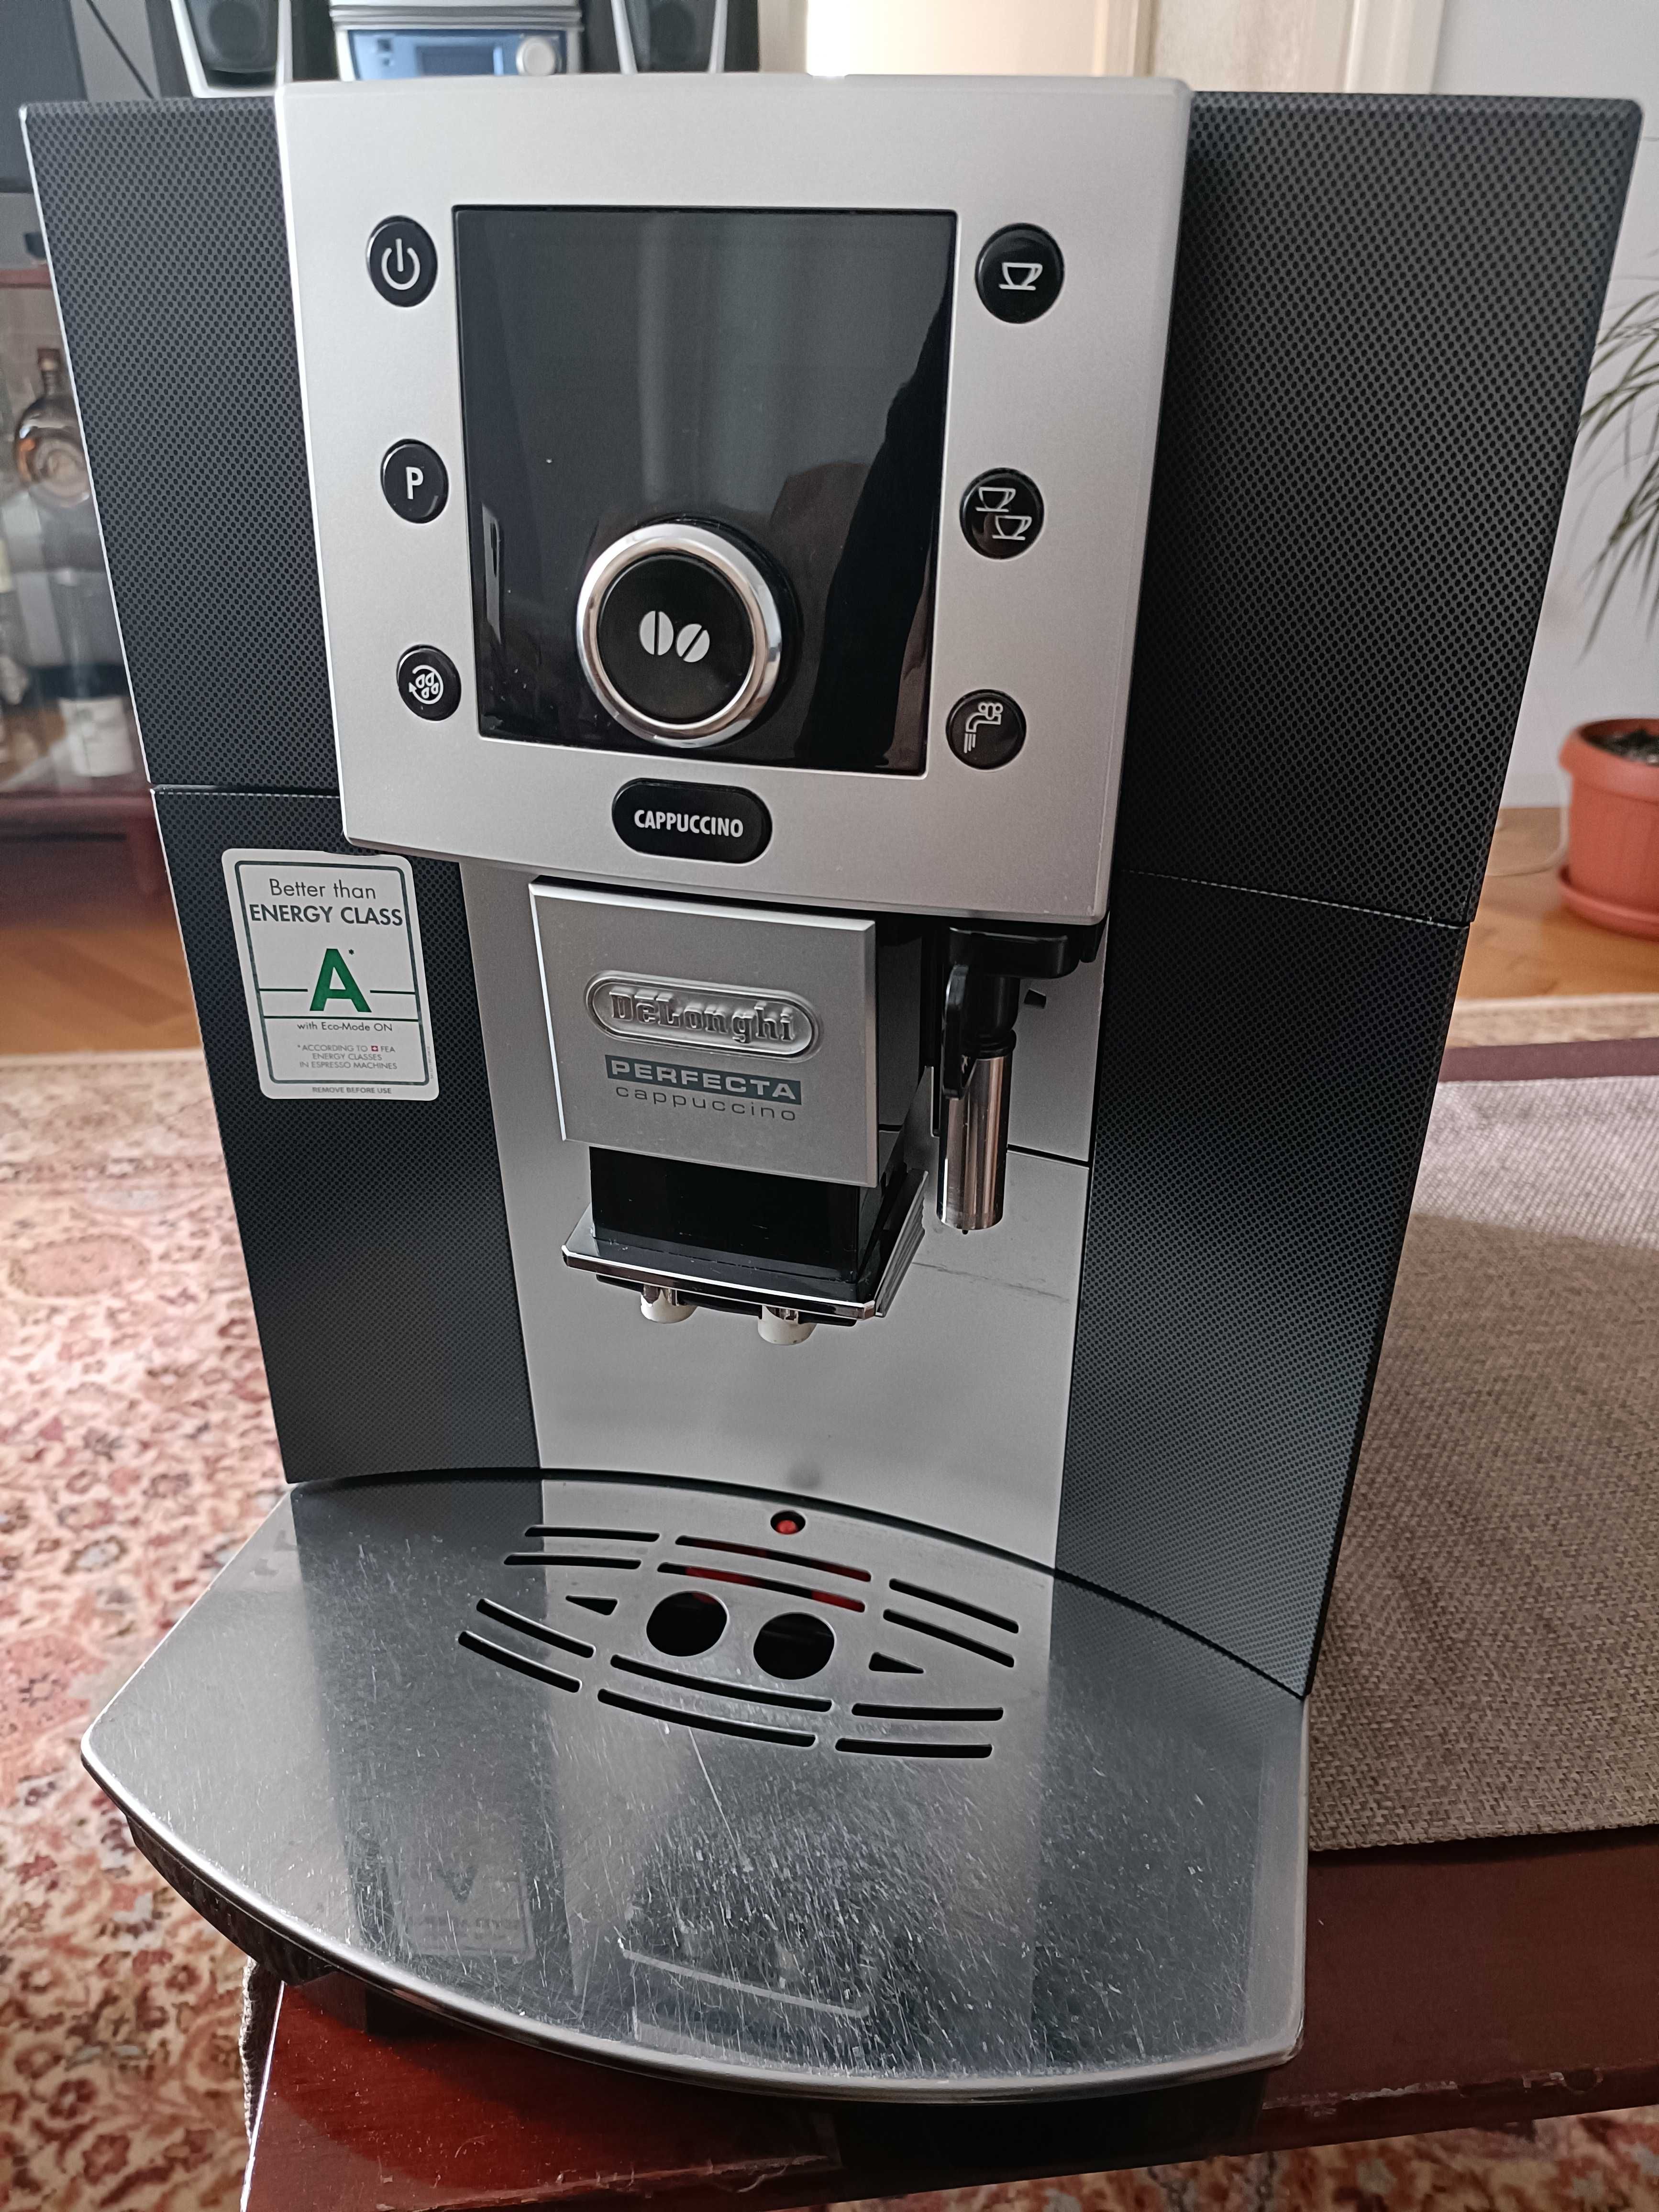 Expresor de cafea DeLonghi Perfecta Capucino ESAM 5500 B